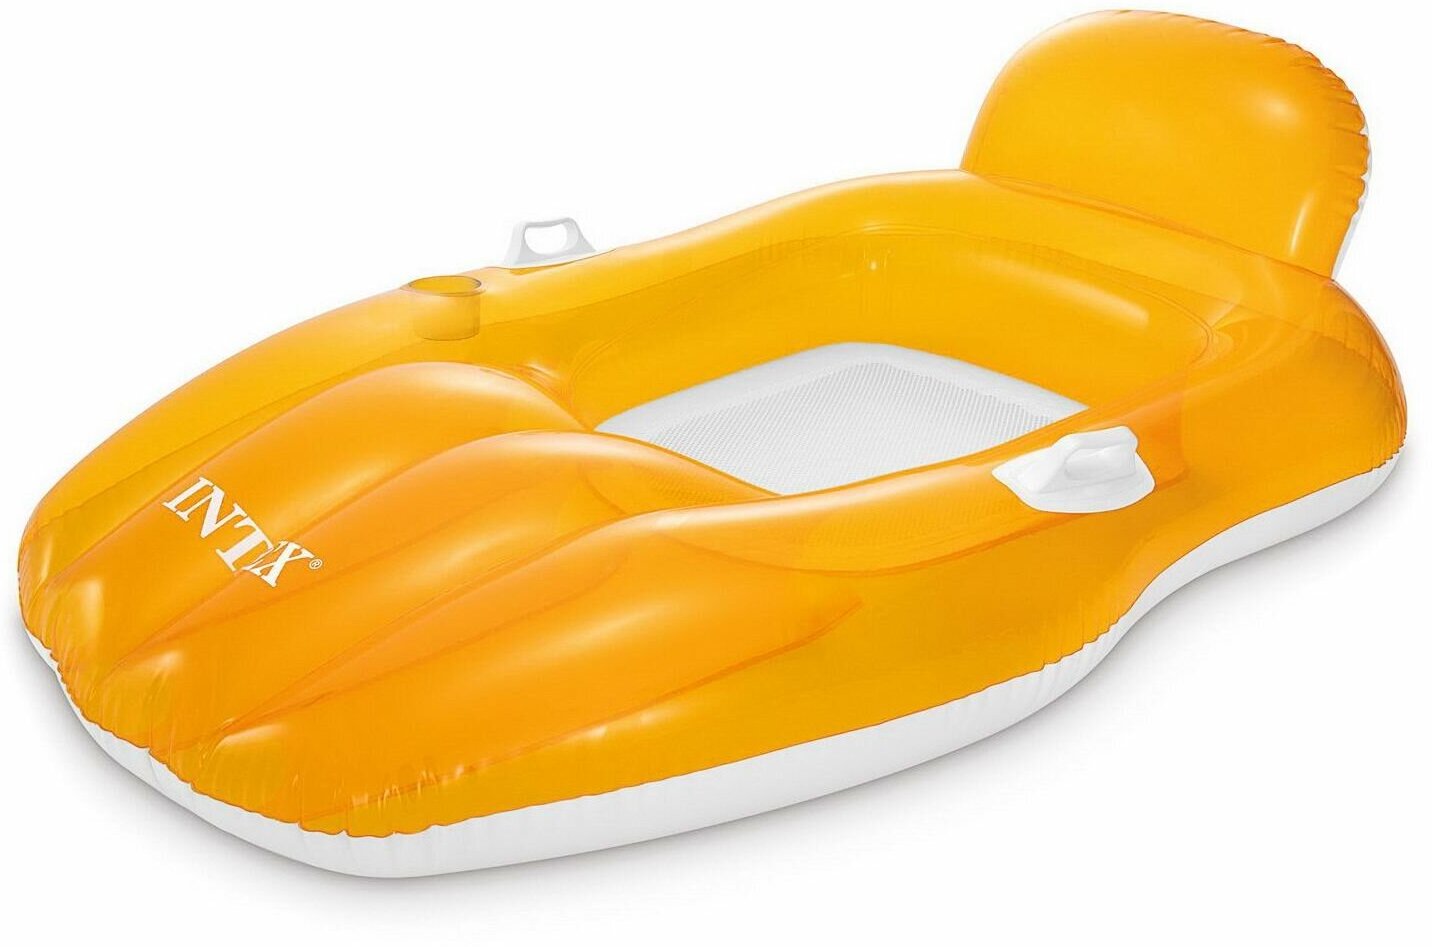 Матрас-лодка надувной INTEX CHILL &aposN FLOAT LOUNGES желтый, 163*104 см int56805EU/жёлтый